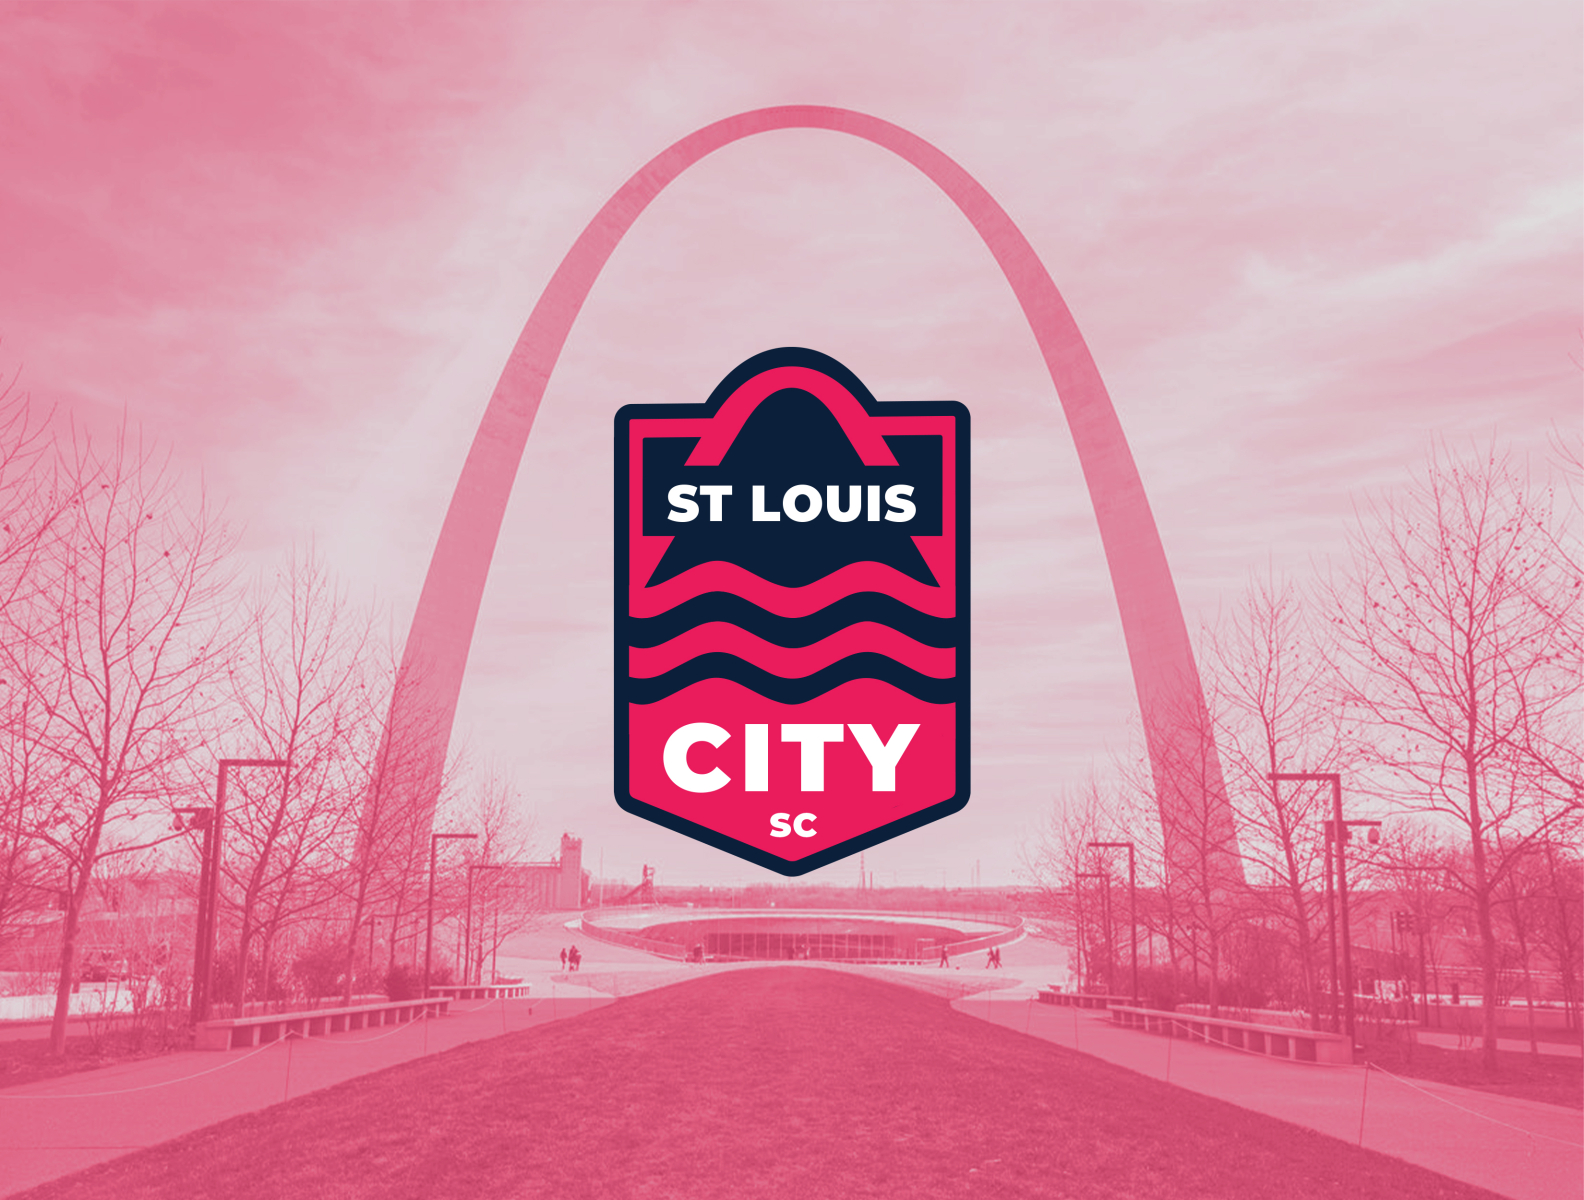 St Louis City SC Jersey Design Concept by Jesus Gamez Flores on